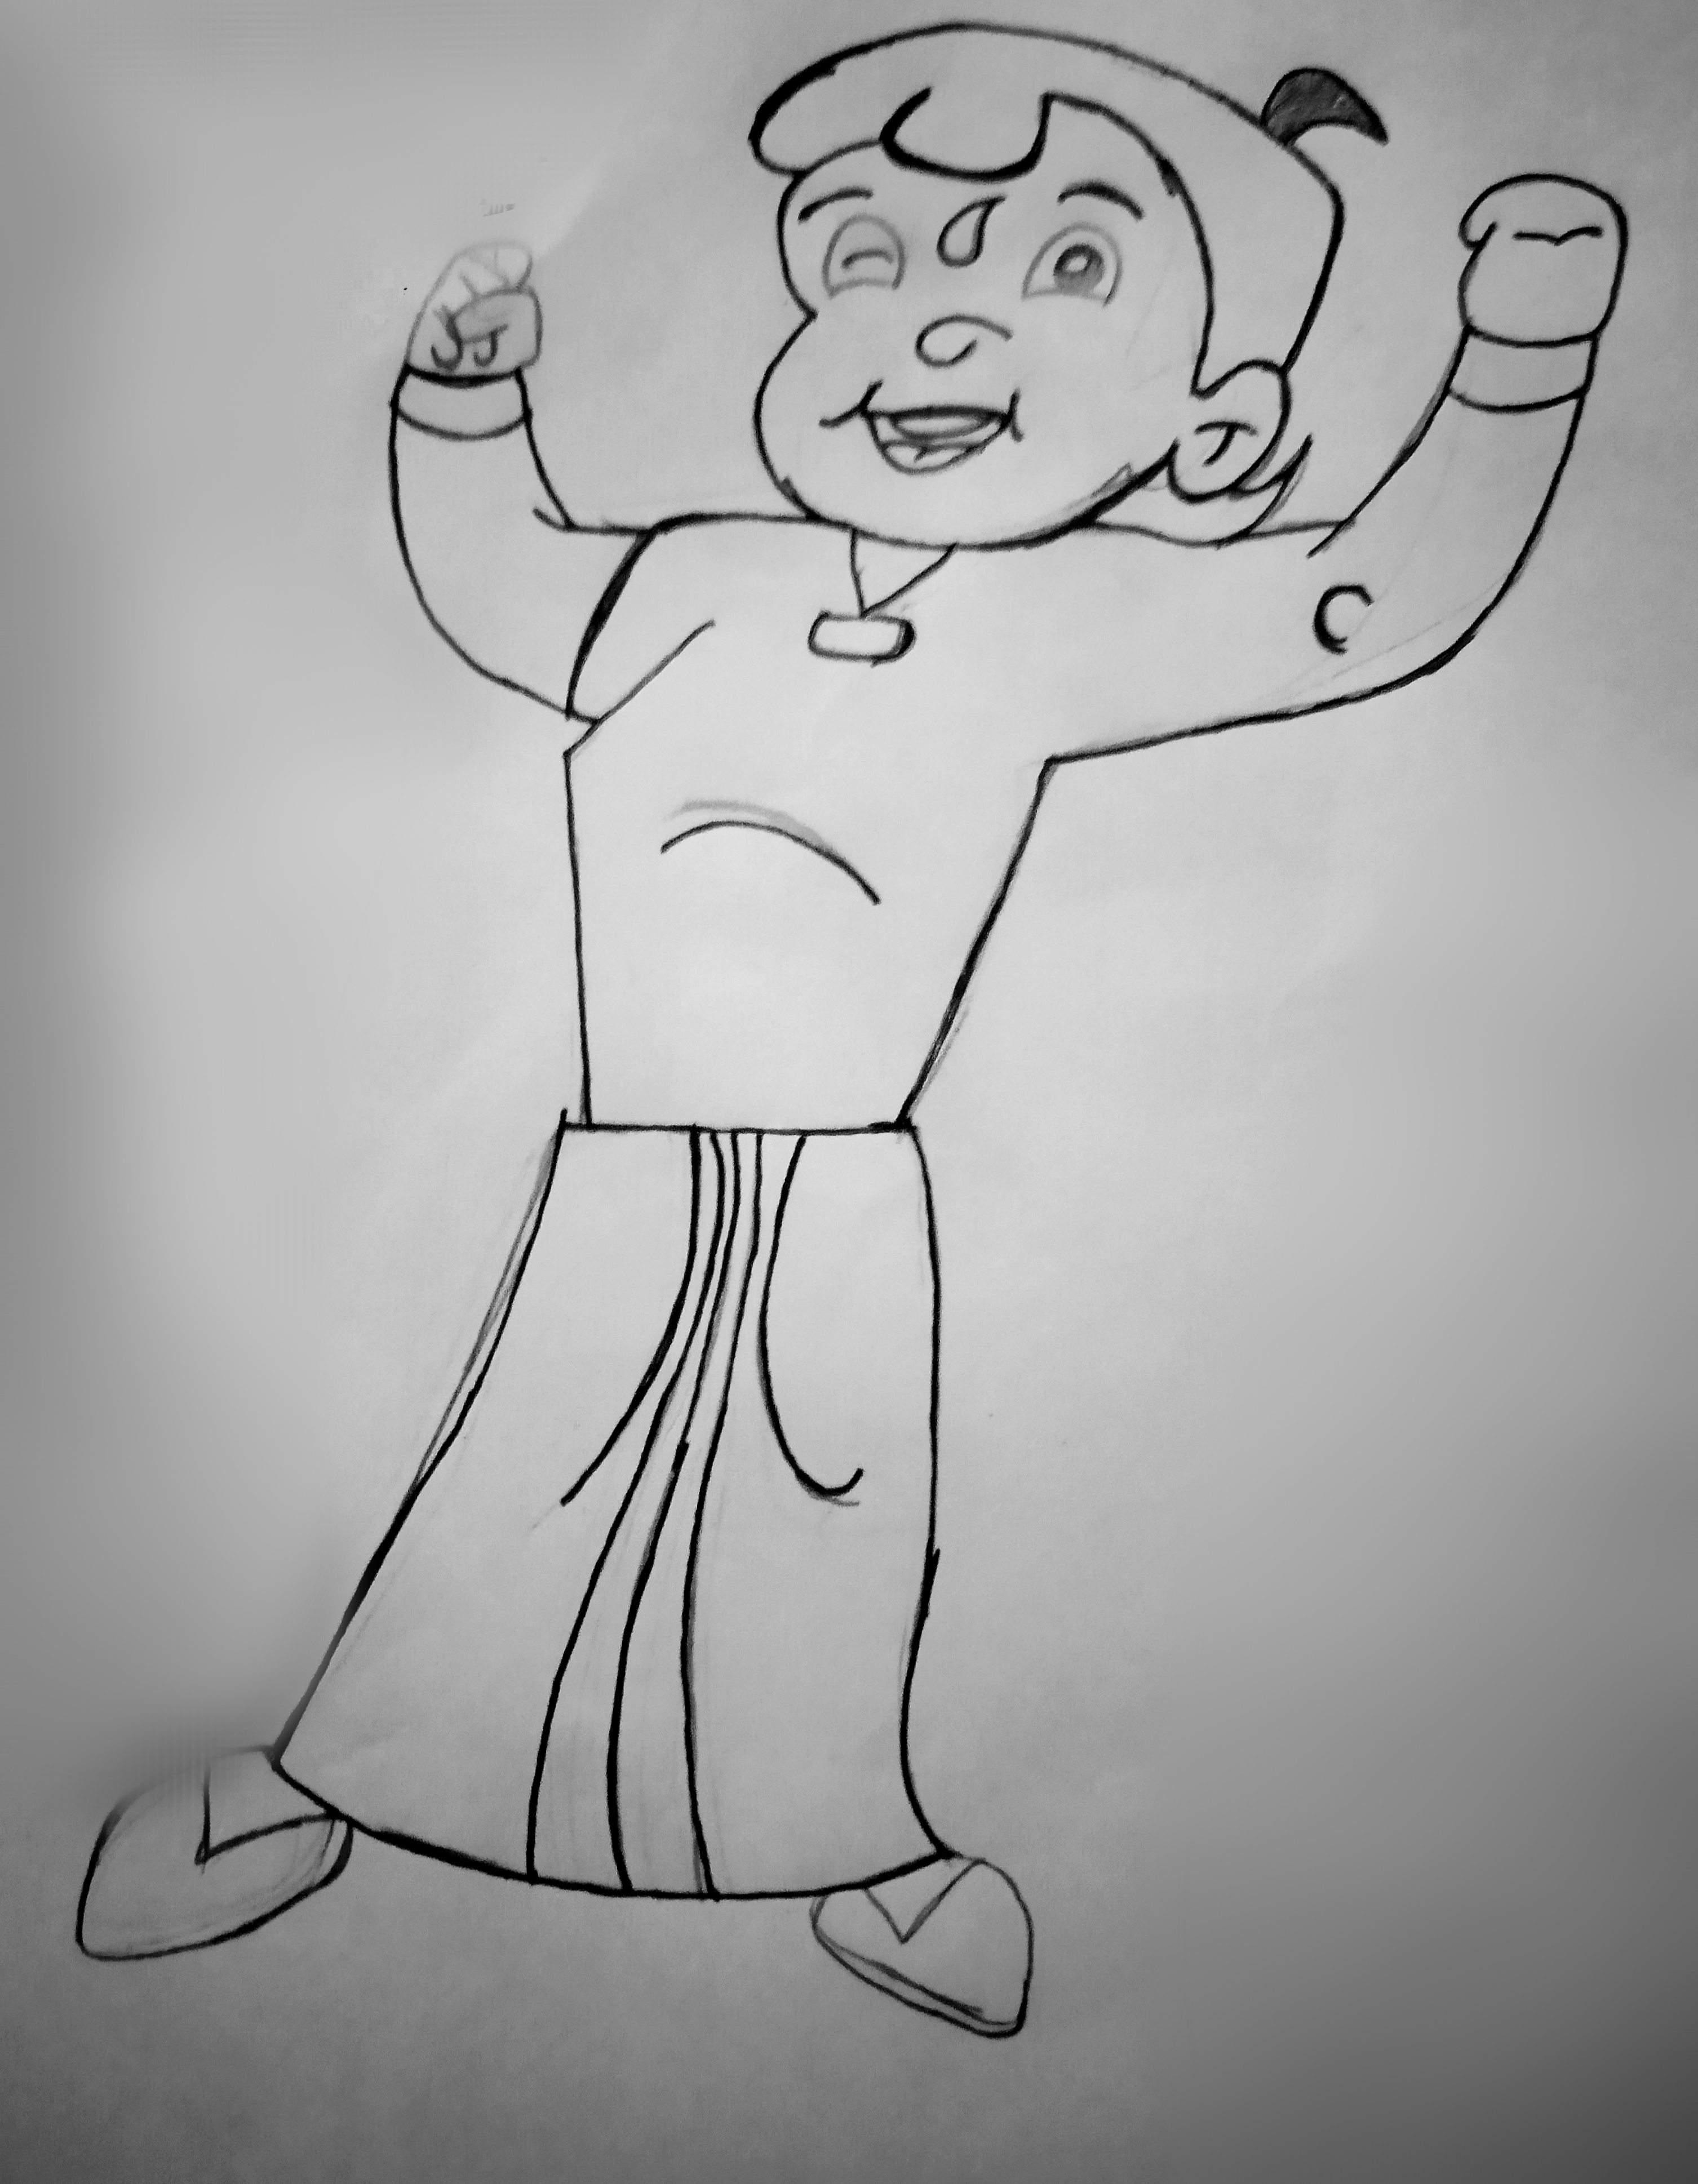 nzaman on X How to Draw Bheem  Bheem Drawing  Chota Bheem Cartoon Sketch  with Pen httpstcobwQNBL184f via YouTube httpstcoedCoCwwjPO  X